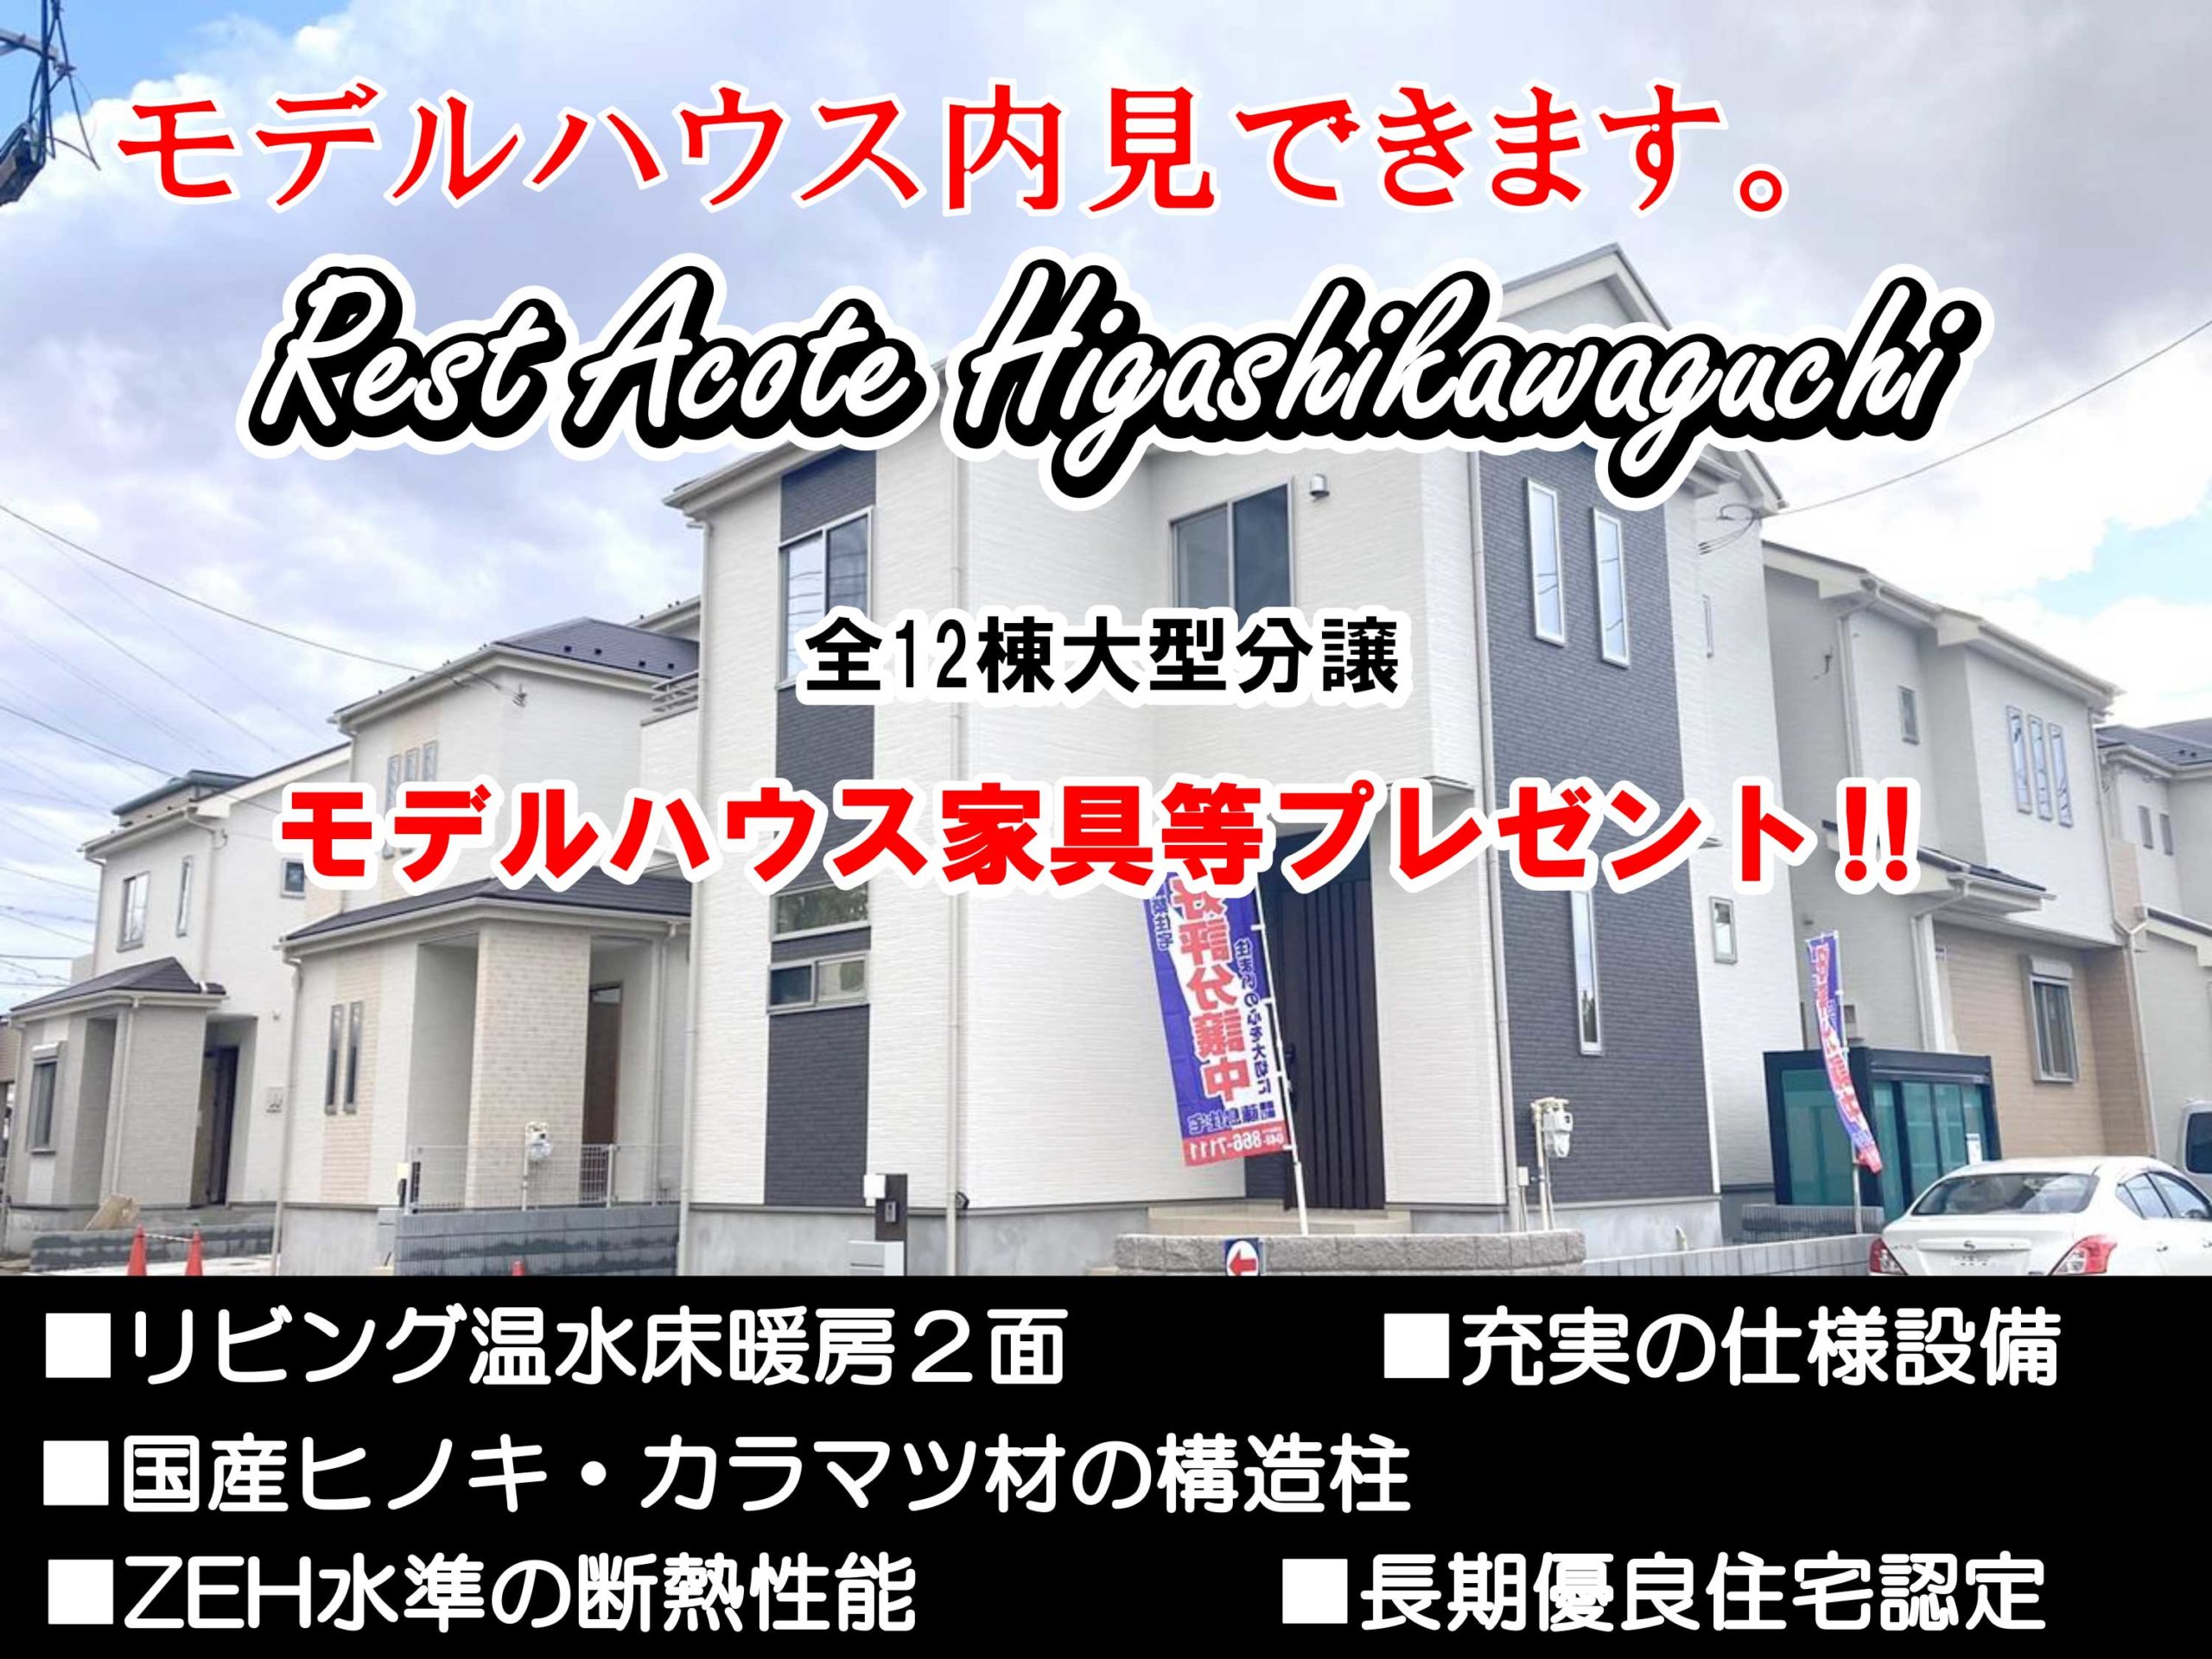 アイキャッチRest-Acote-Higashikawaguchi-43daimon